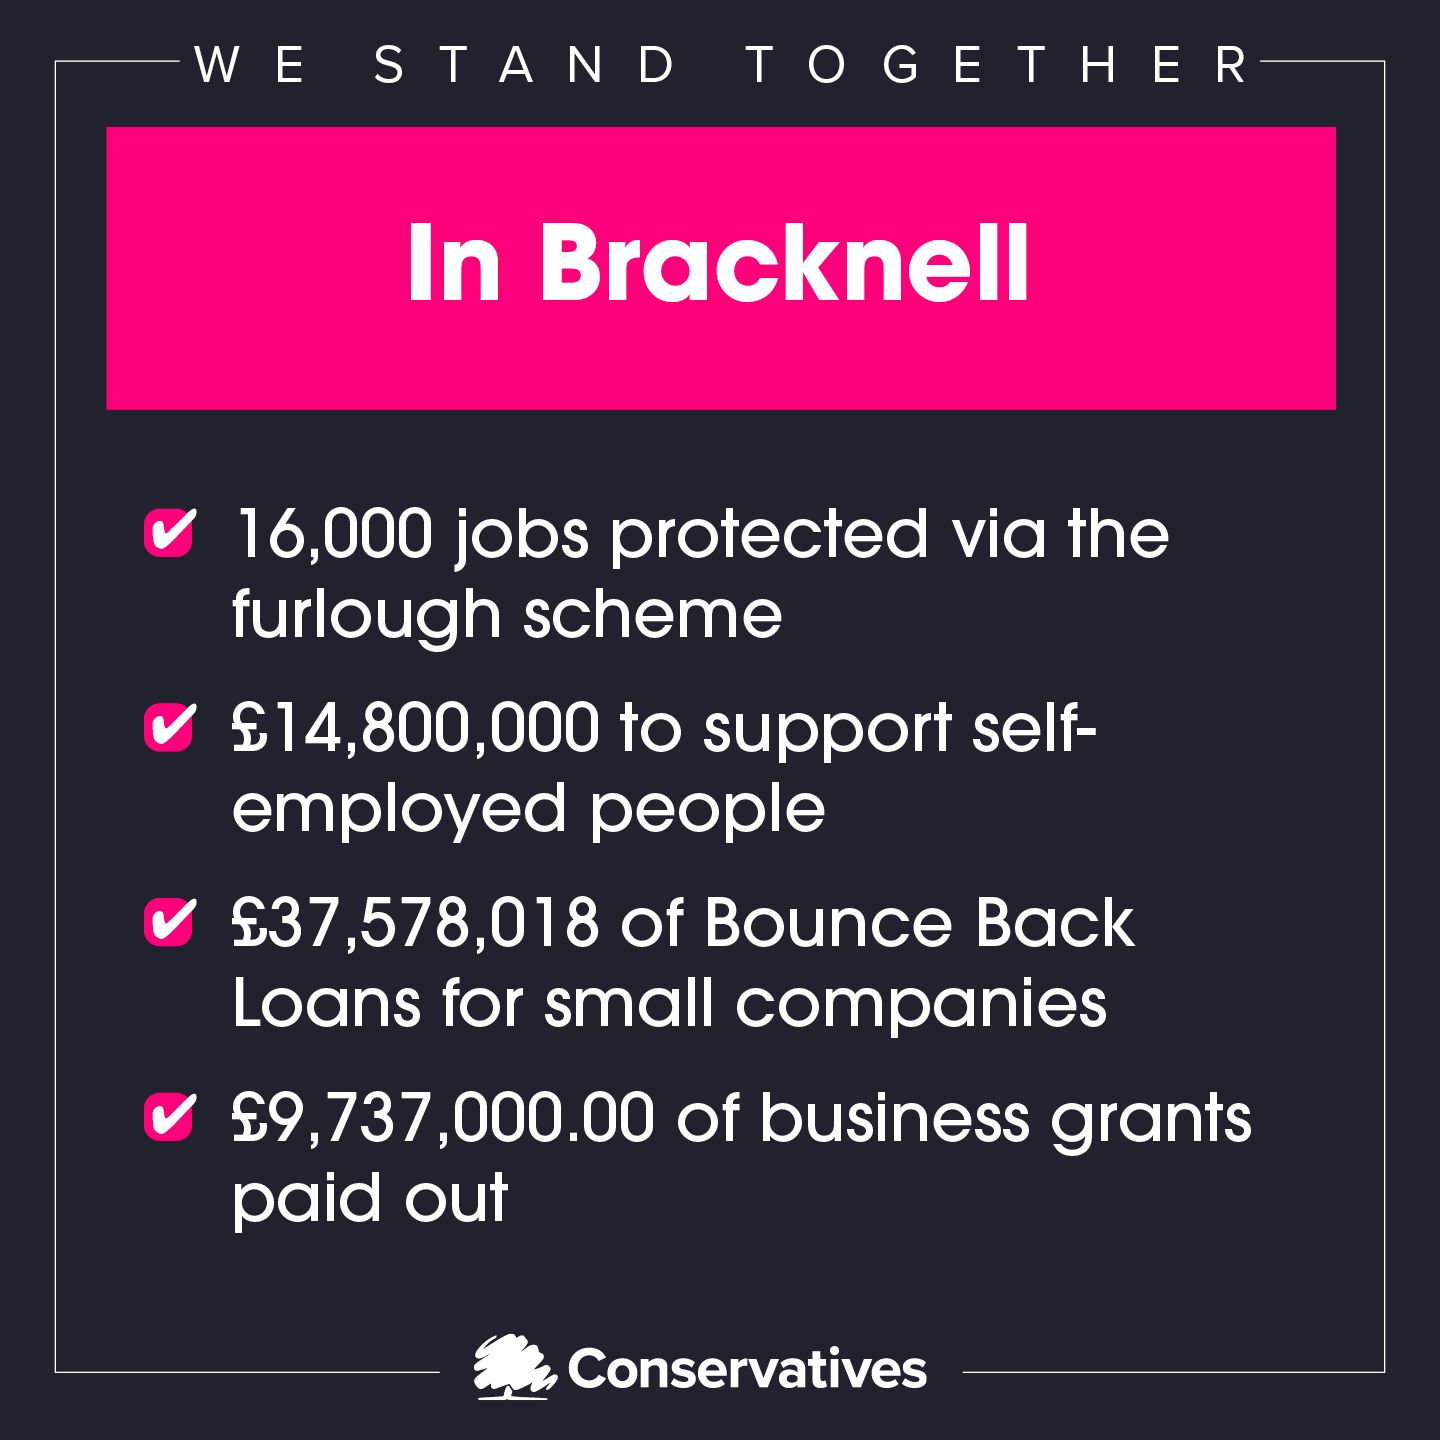 Backing Bracknell